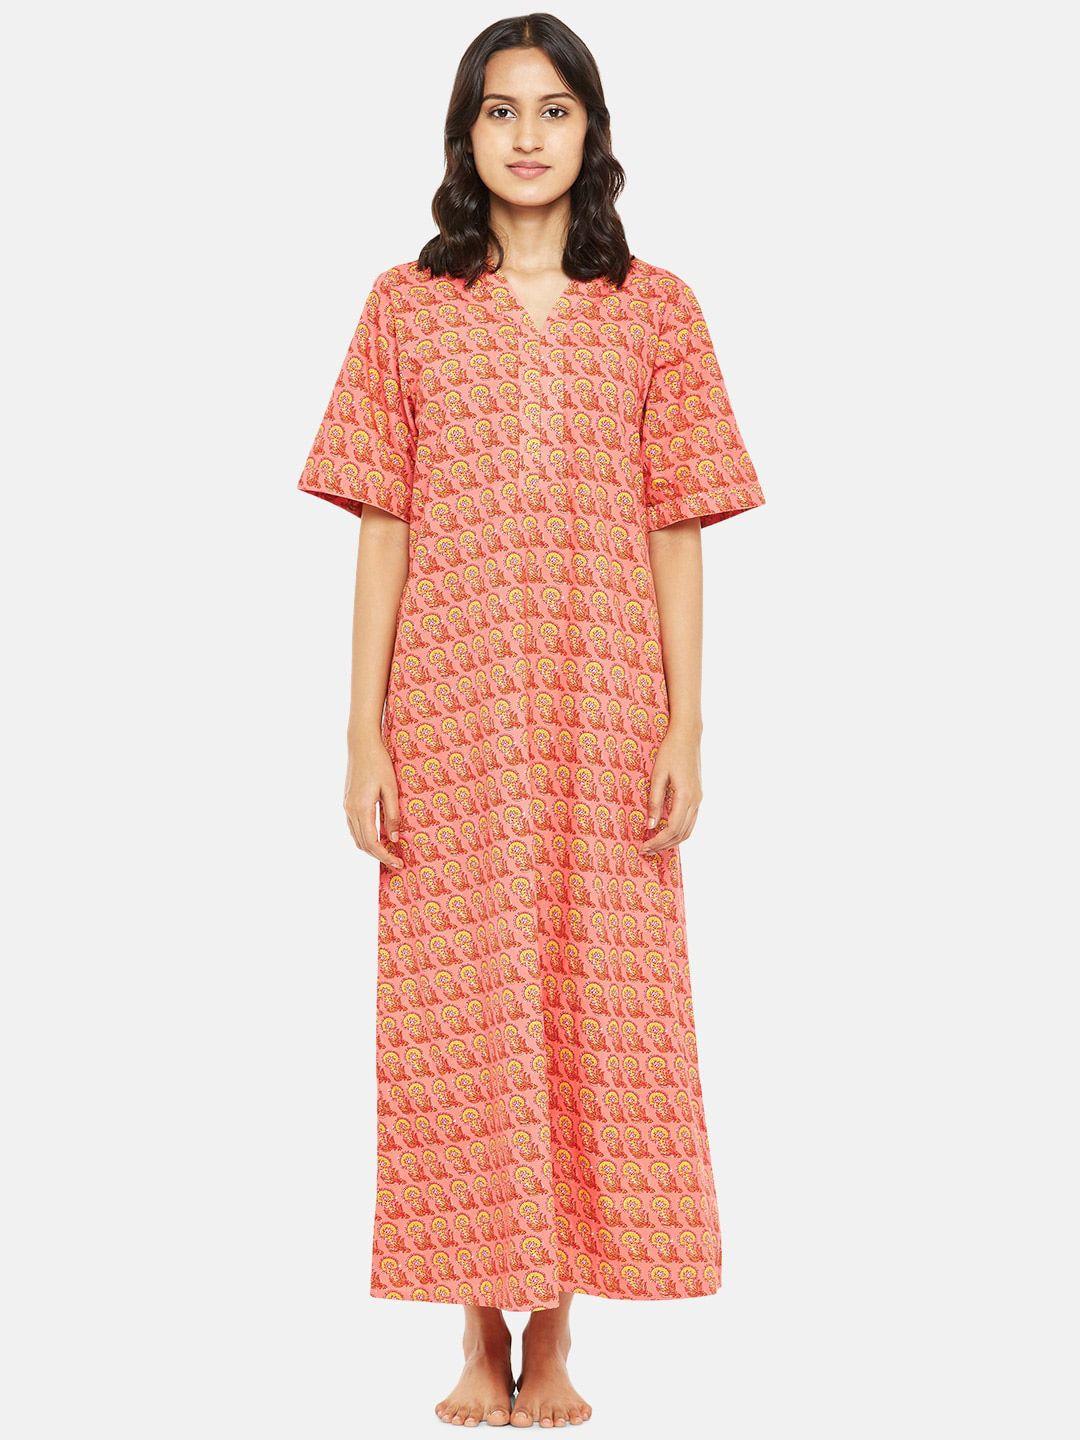 rangmanch by pantaloons pink printed maxi nightdress